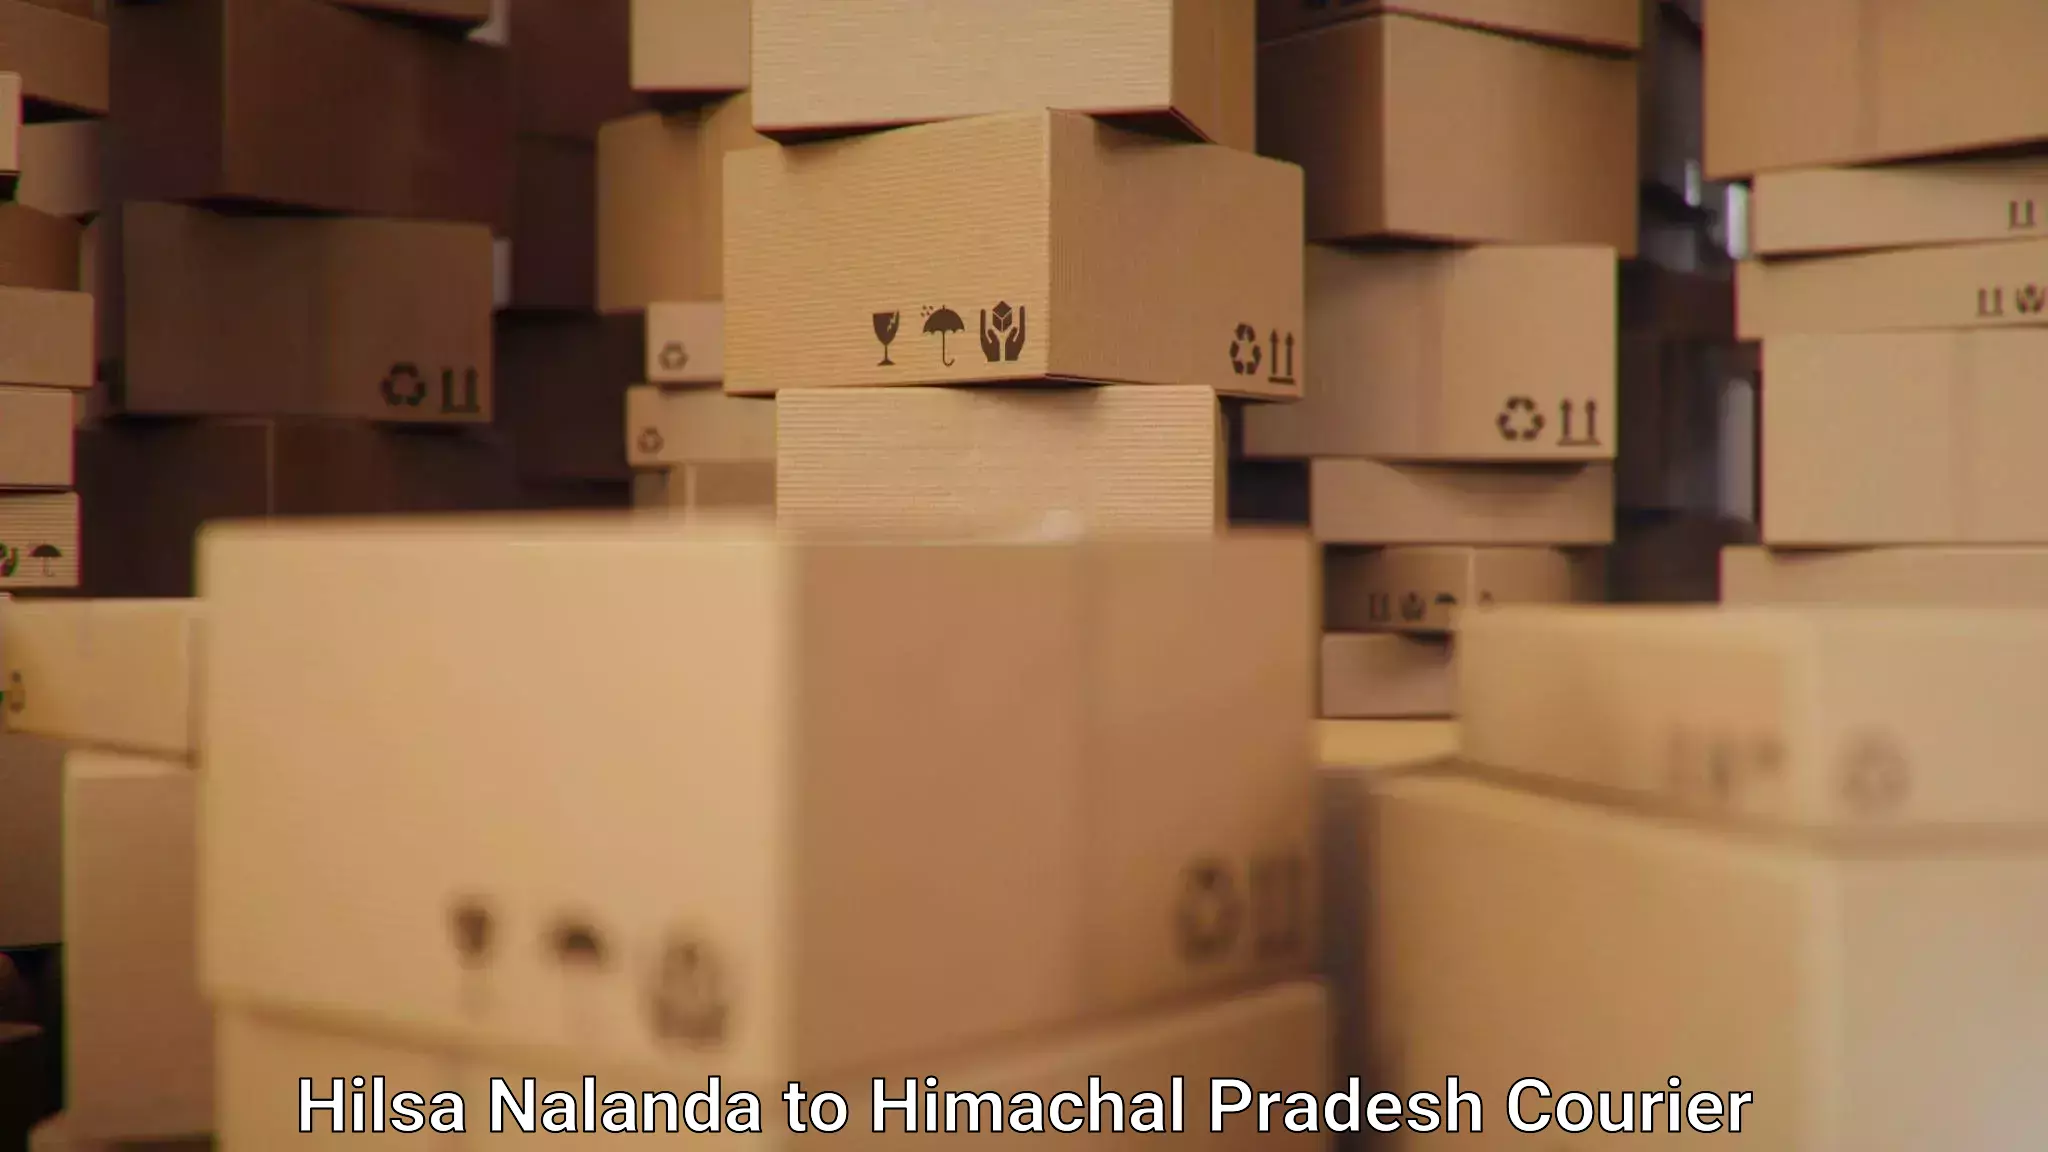 Logistics service provider Hilsa Nalanda to Himachal Pradesh